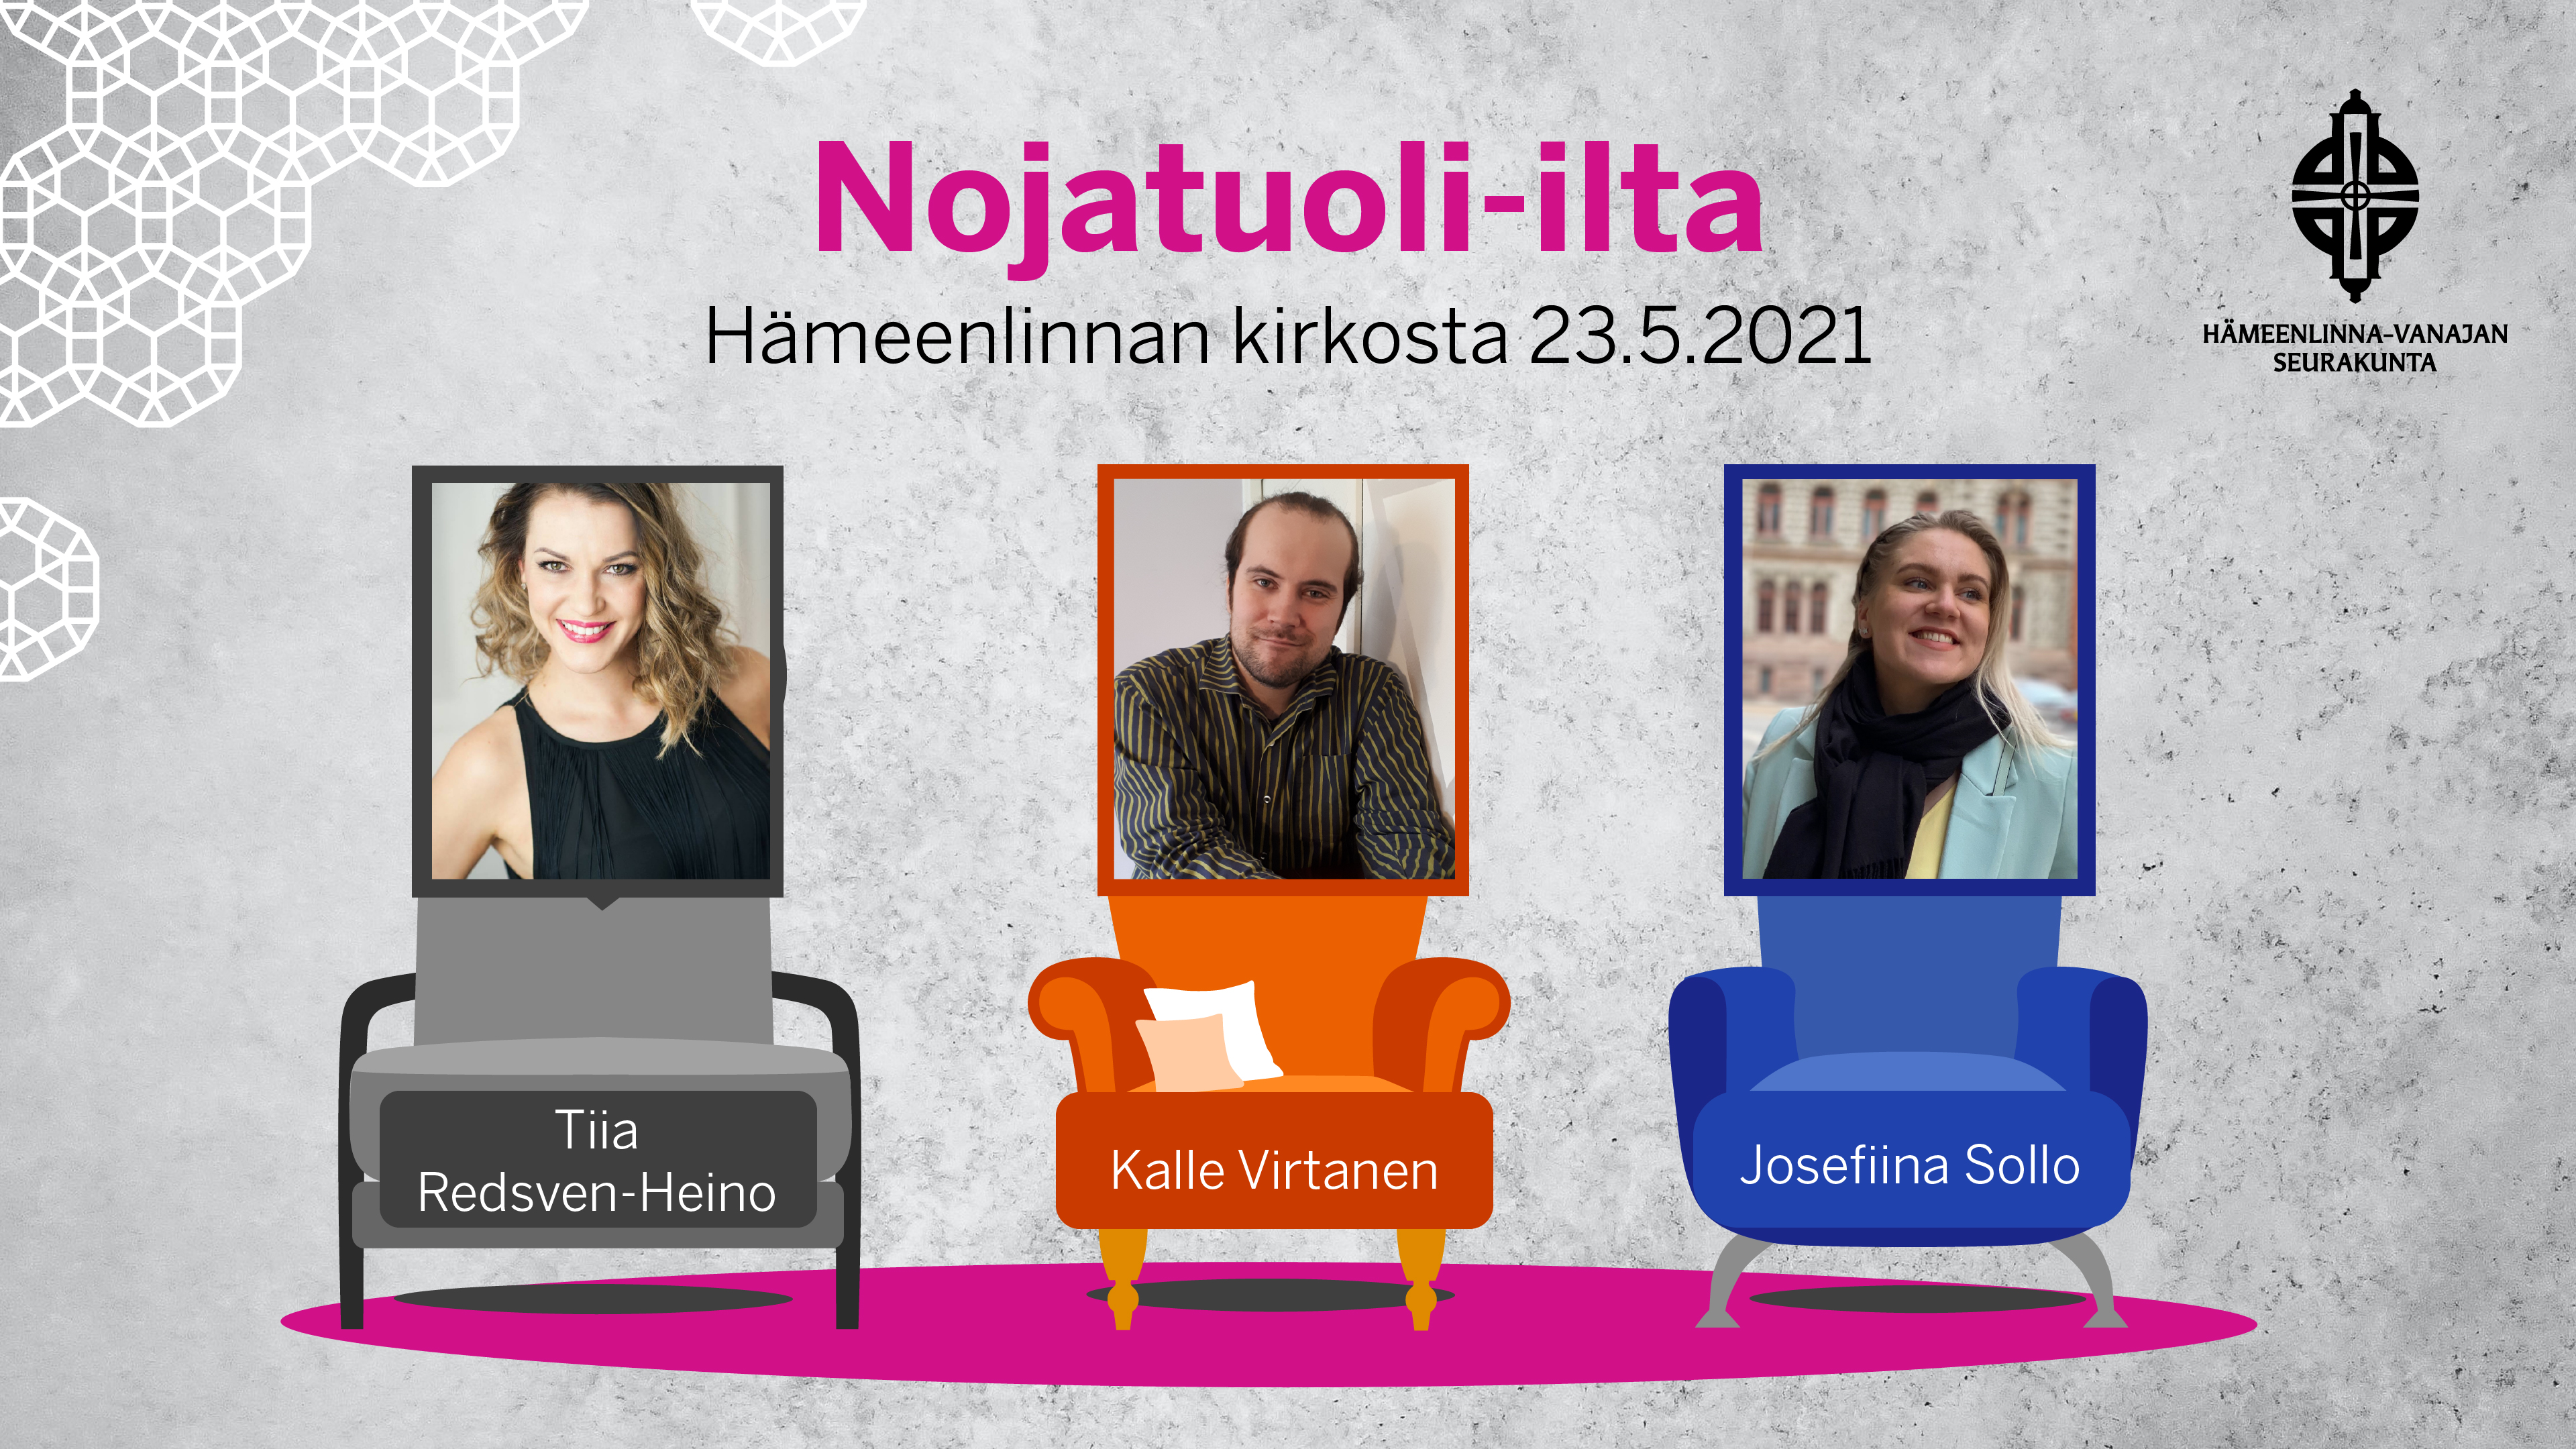 Piirroskuva värikkäistä nojatuoleista, tuoleilla kasvokuvat illan esiintyjistä: Tiia Redsven-Heino, Kalle Virtanen, Josefiina Sollo.